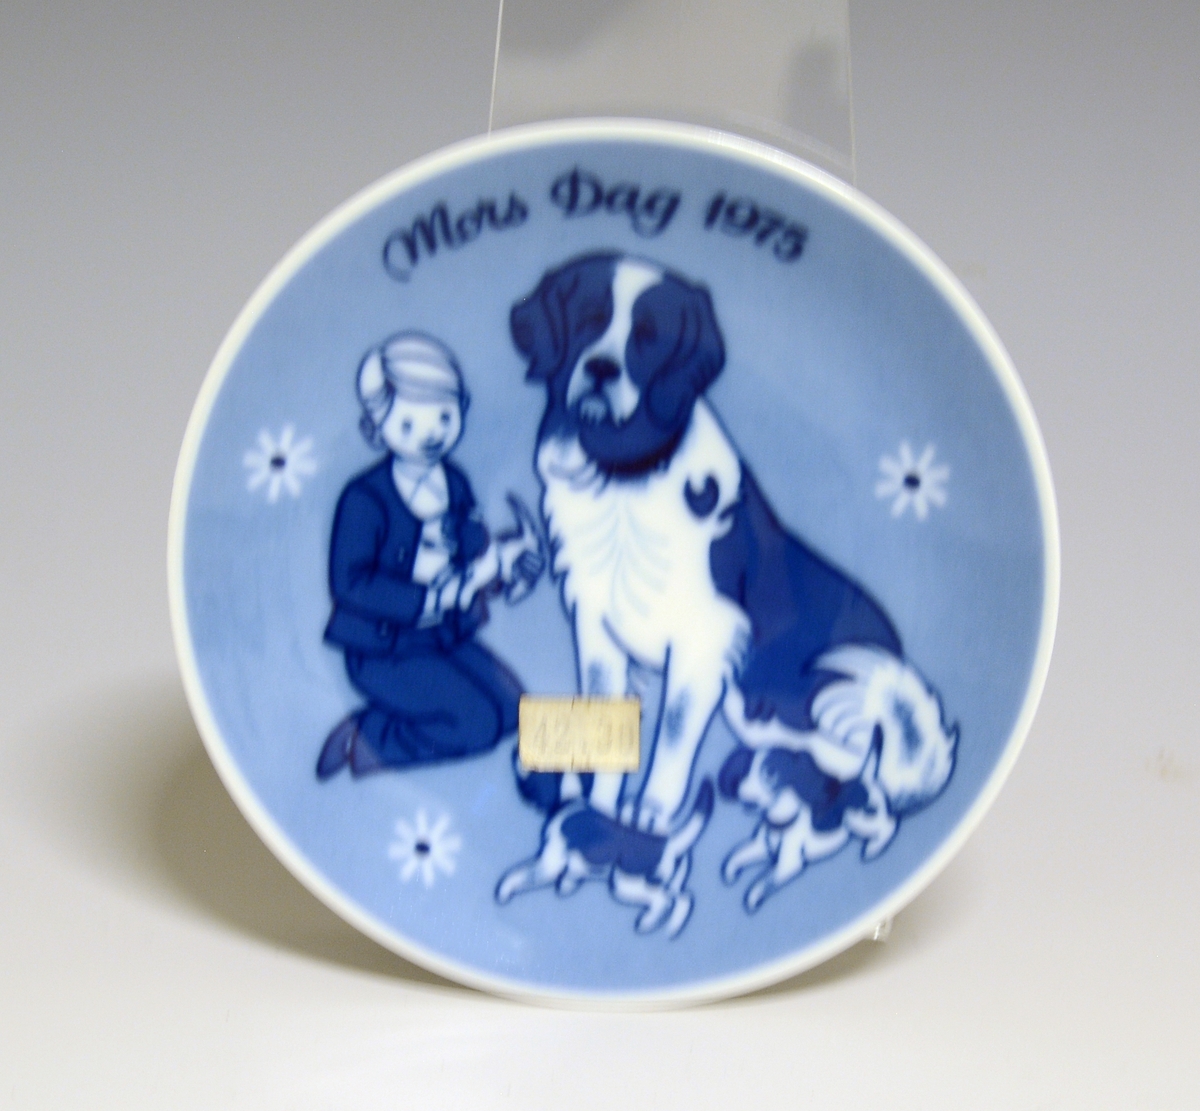 Morsdagsplatte av porselen. Hull til oppheng bak. Hvit glasur. Dekorert i blått med en gutt med hund og valper, tekst Mors Dag 1975.